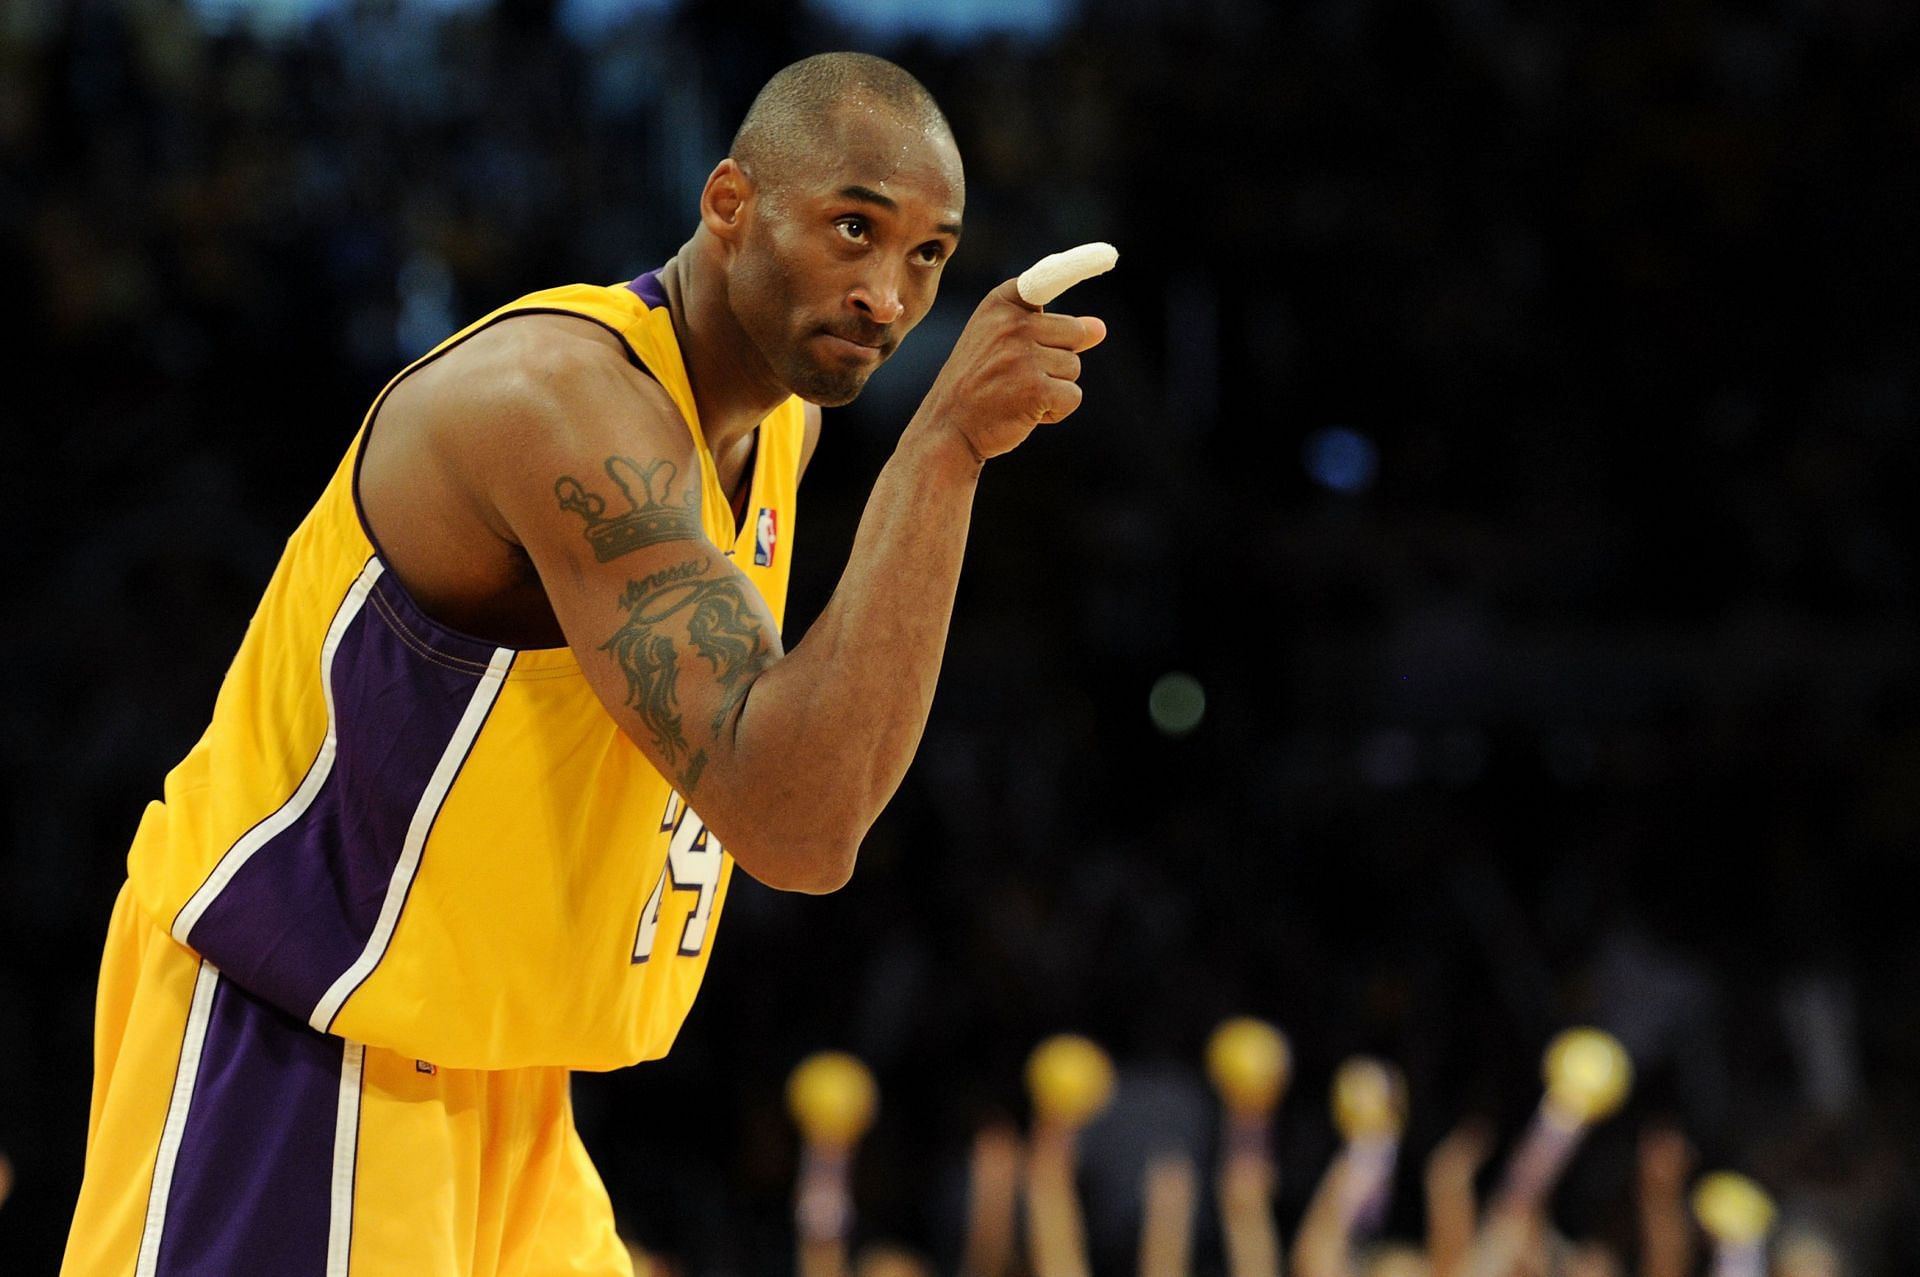 LA Lakers superstar guard Kobe Bryant